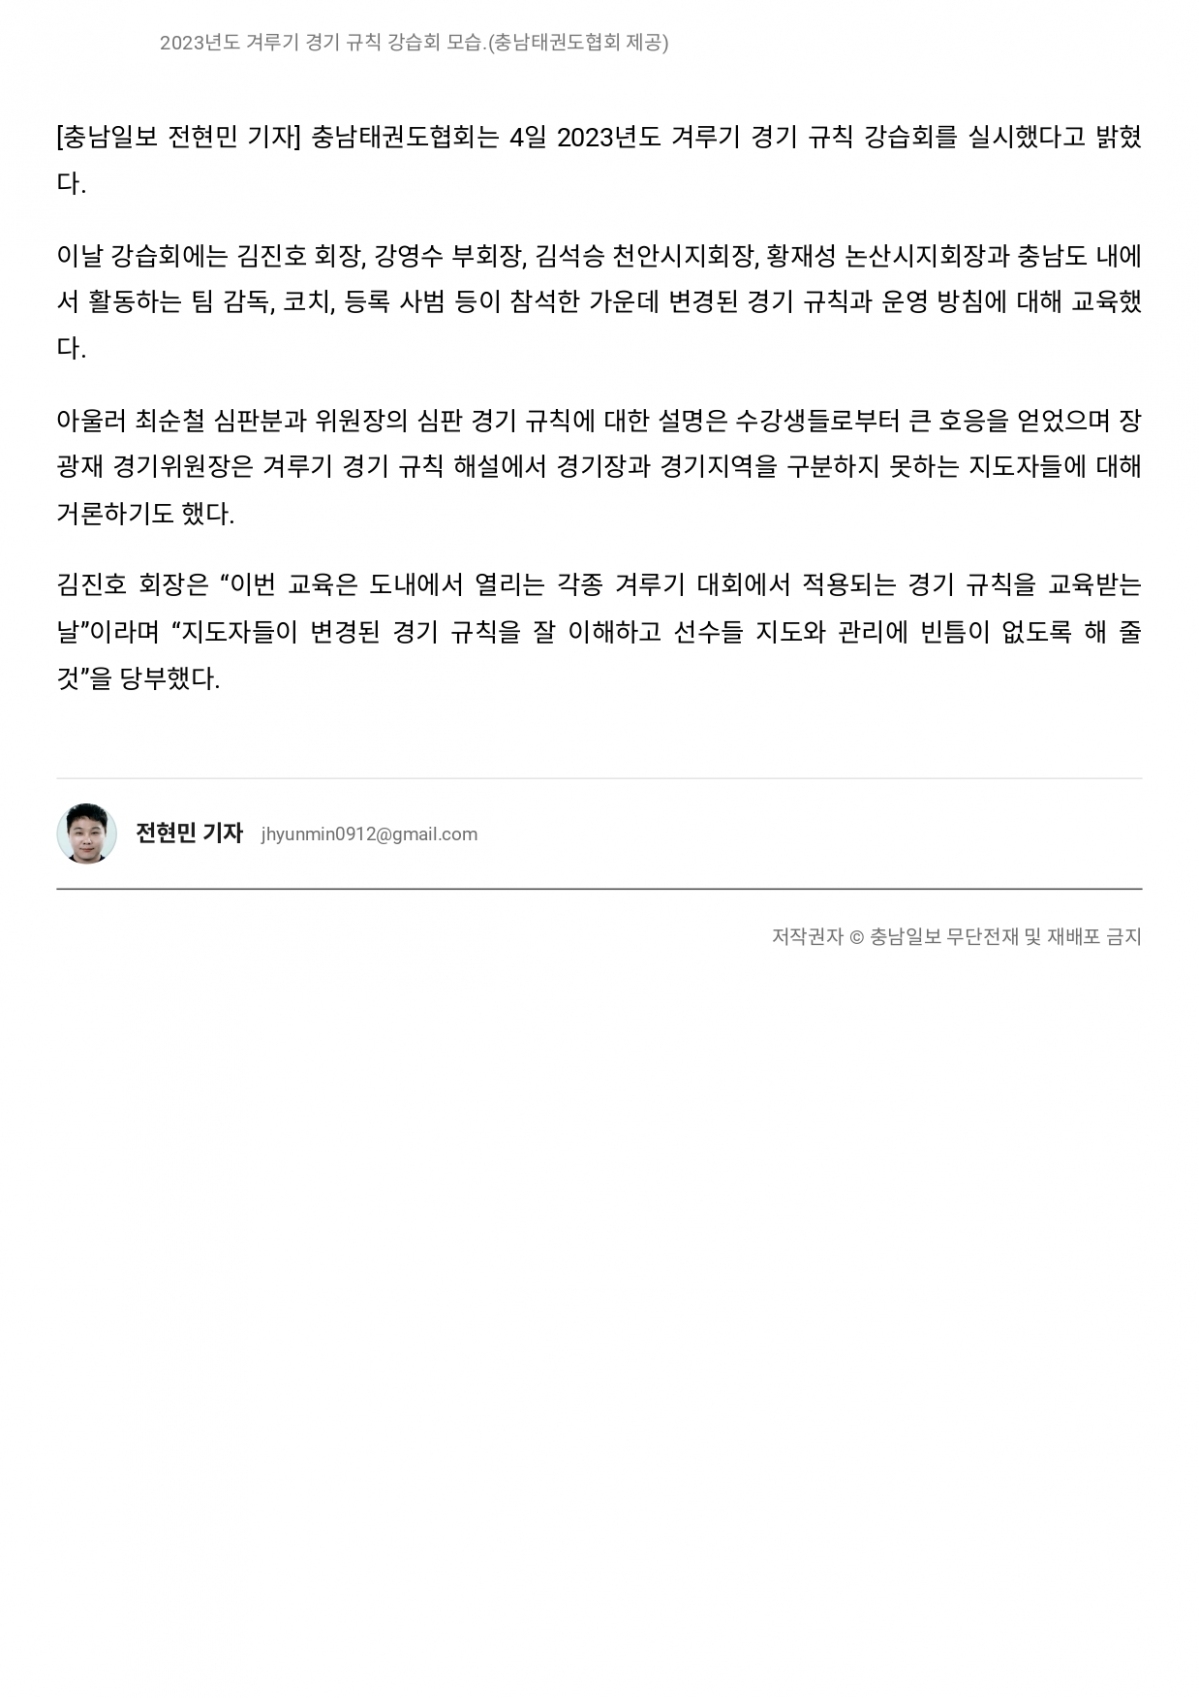 경기규칙 강습회 충남일보-page-0002.jpg